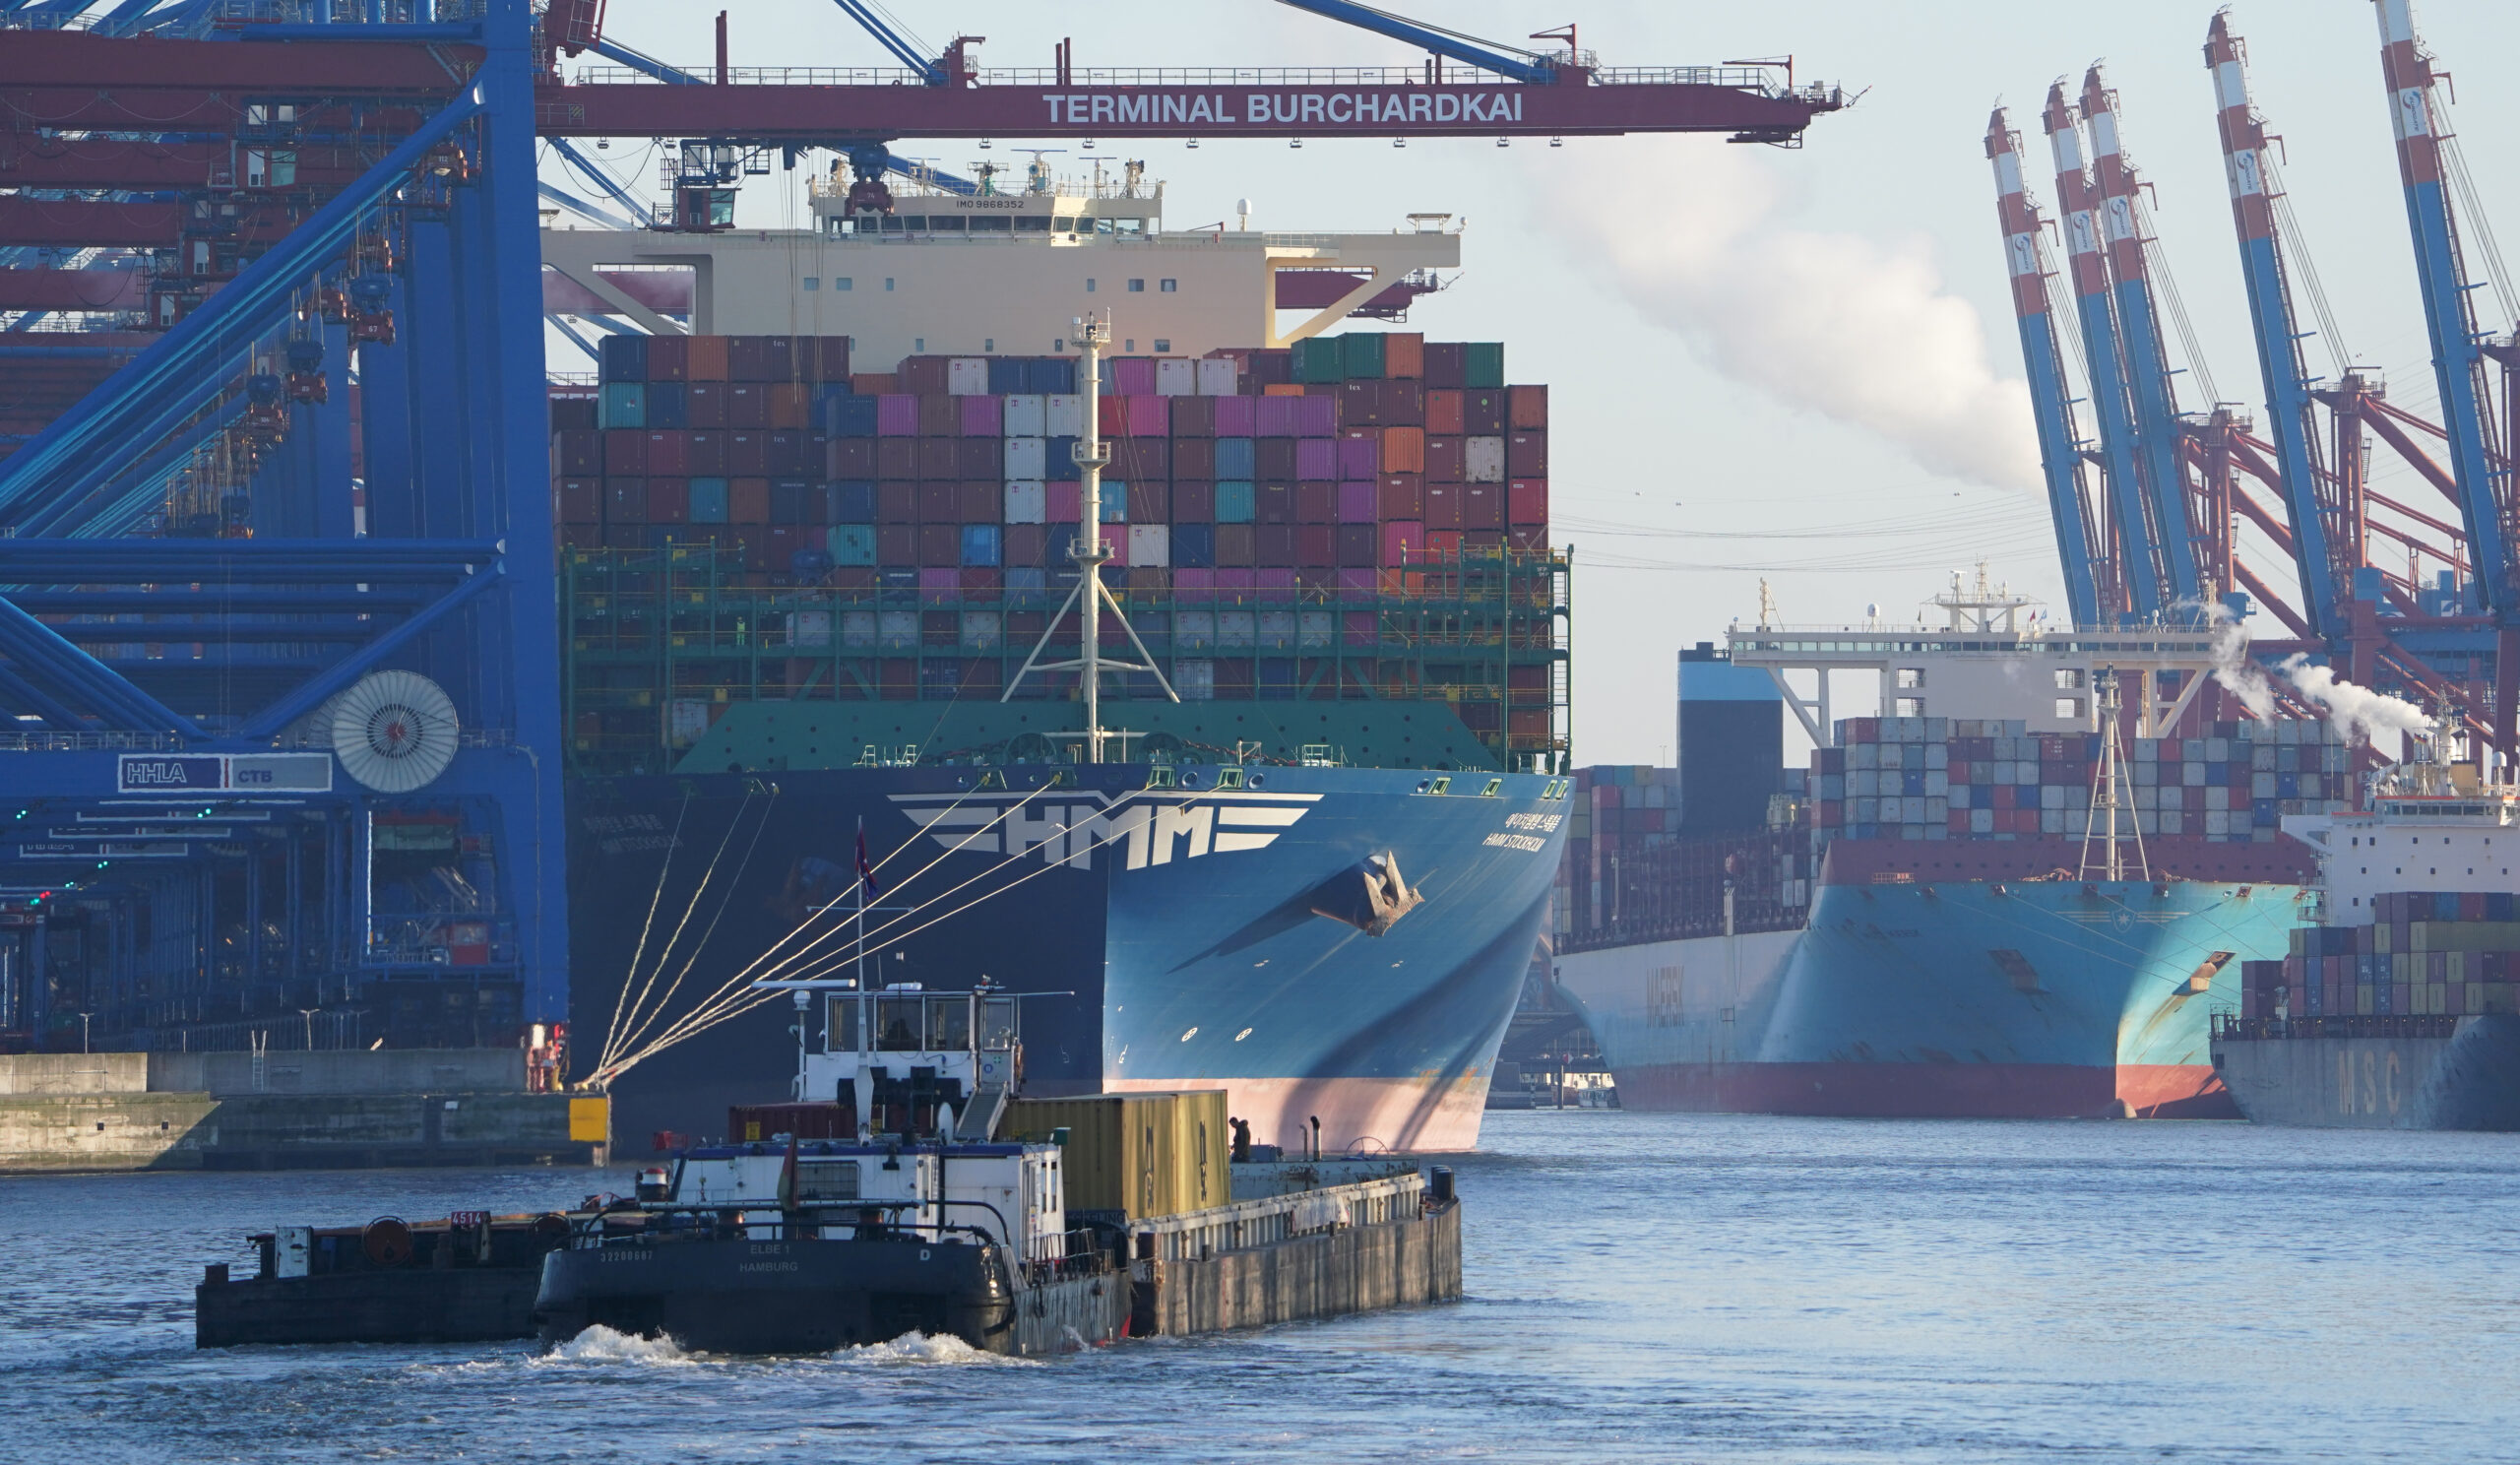 Containerschiffe werden am Container Terminal Burchardkai (l) und am Eurogate Container Terminal (hinten r) im Hafen be- und entladen.